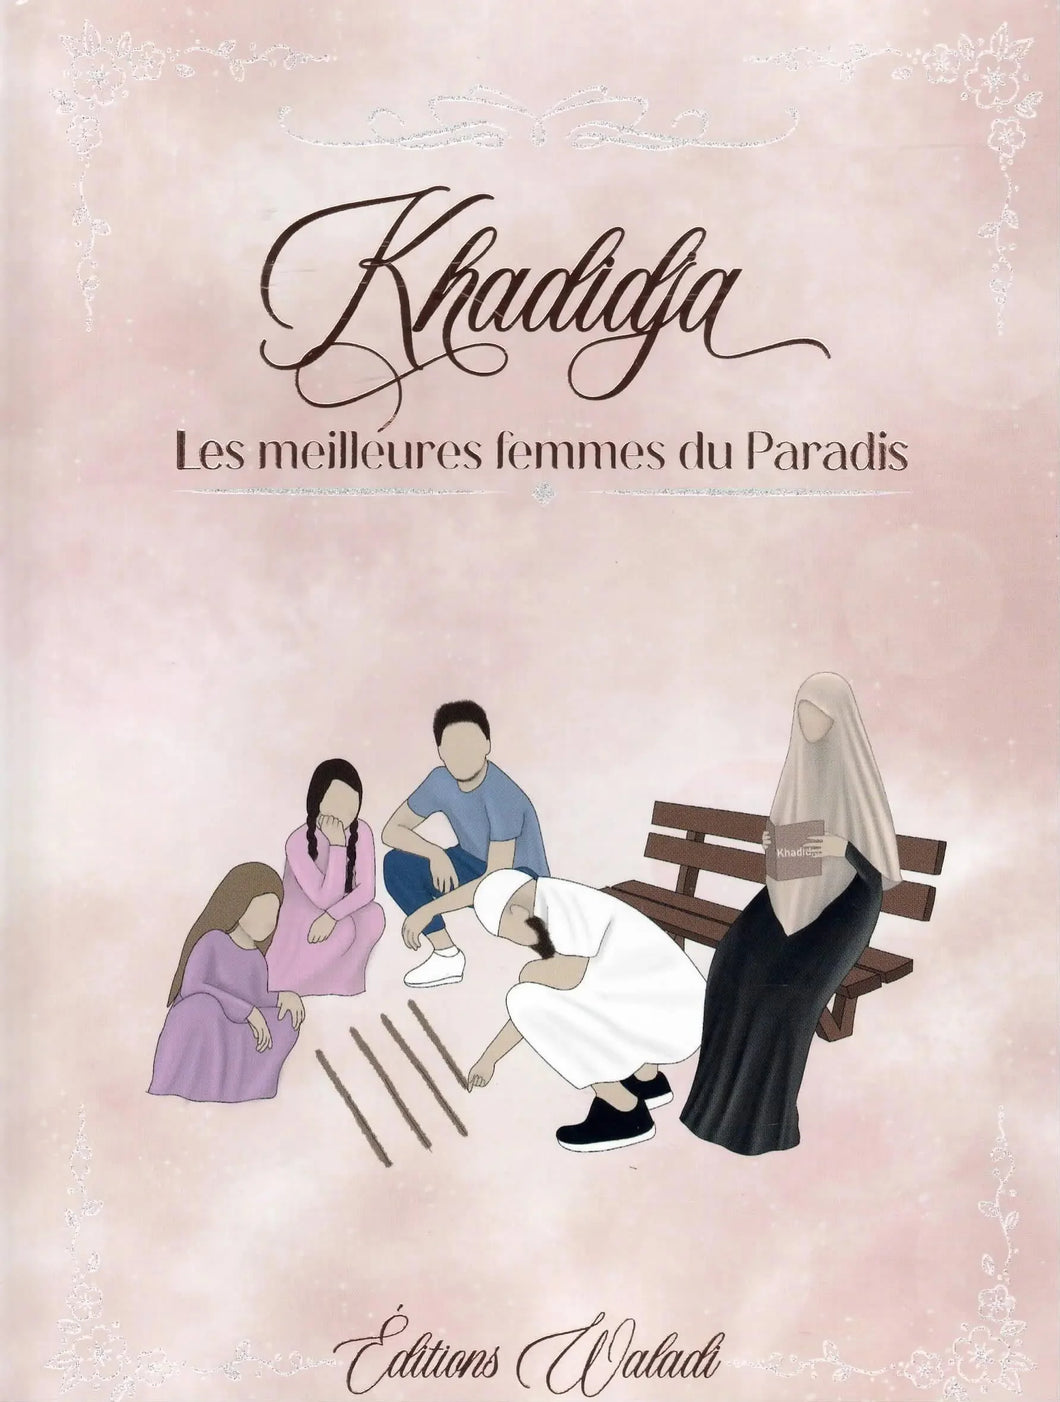 Khadidja, une des meilleures femmes du Paradis